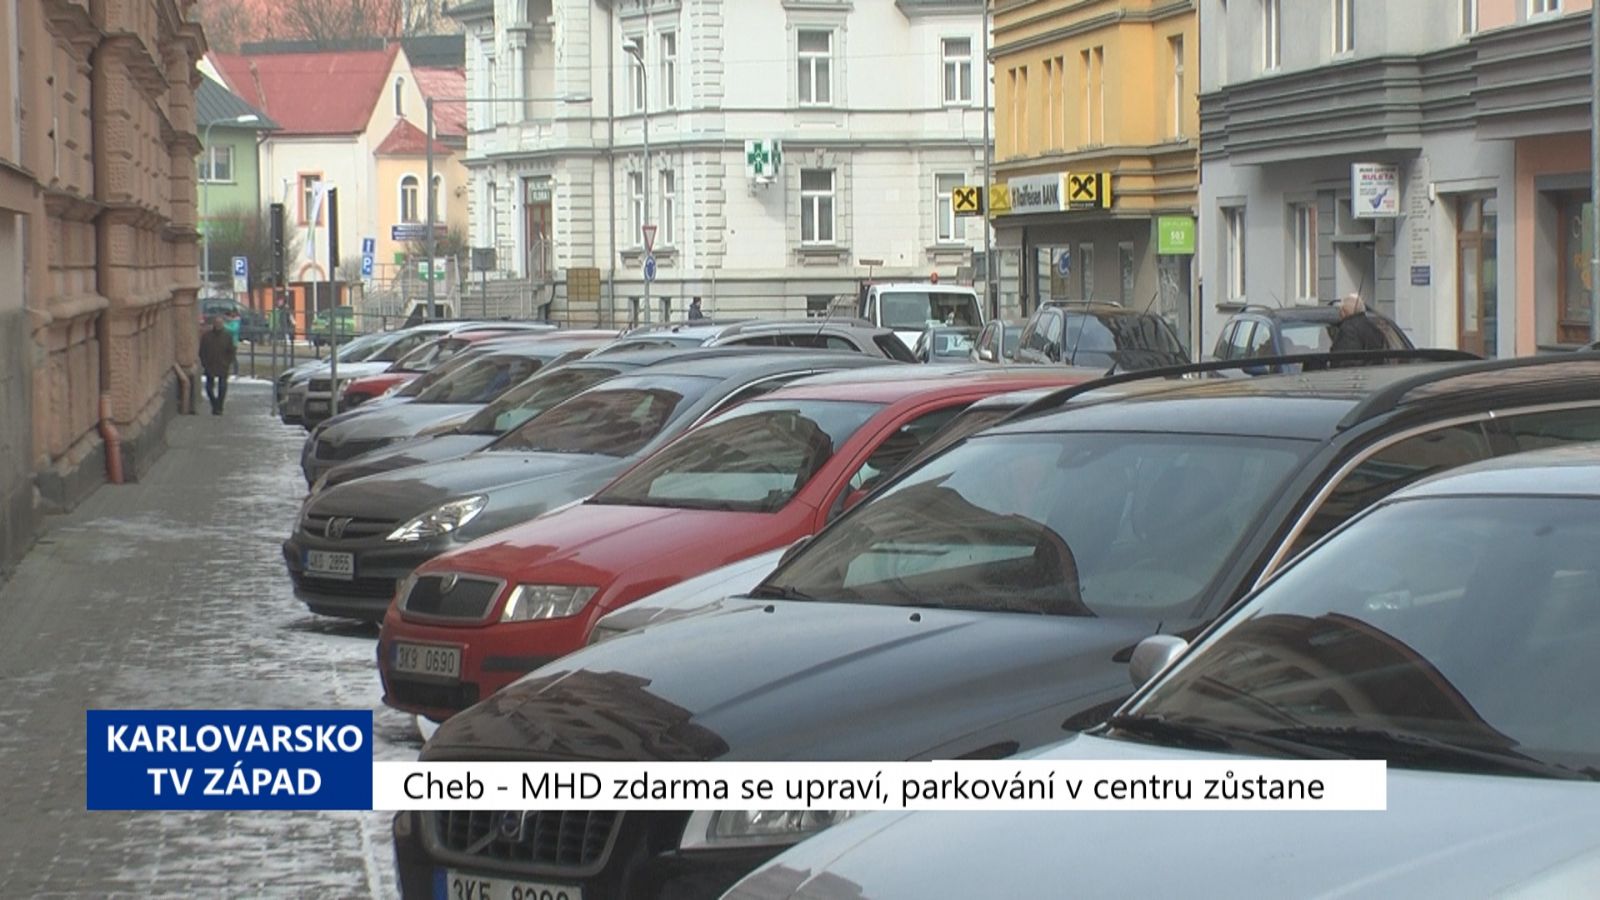 Cheb: MHD zdarma se upraví, parkování v centru zůstane (TV Západ)